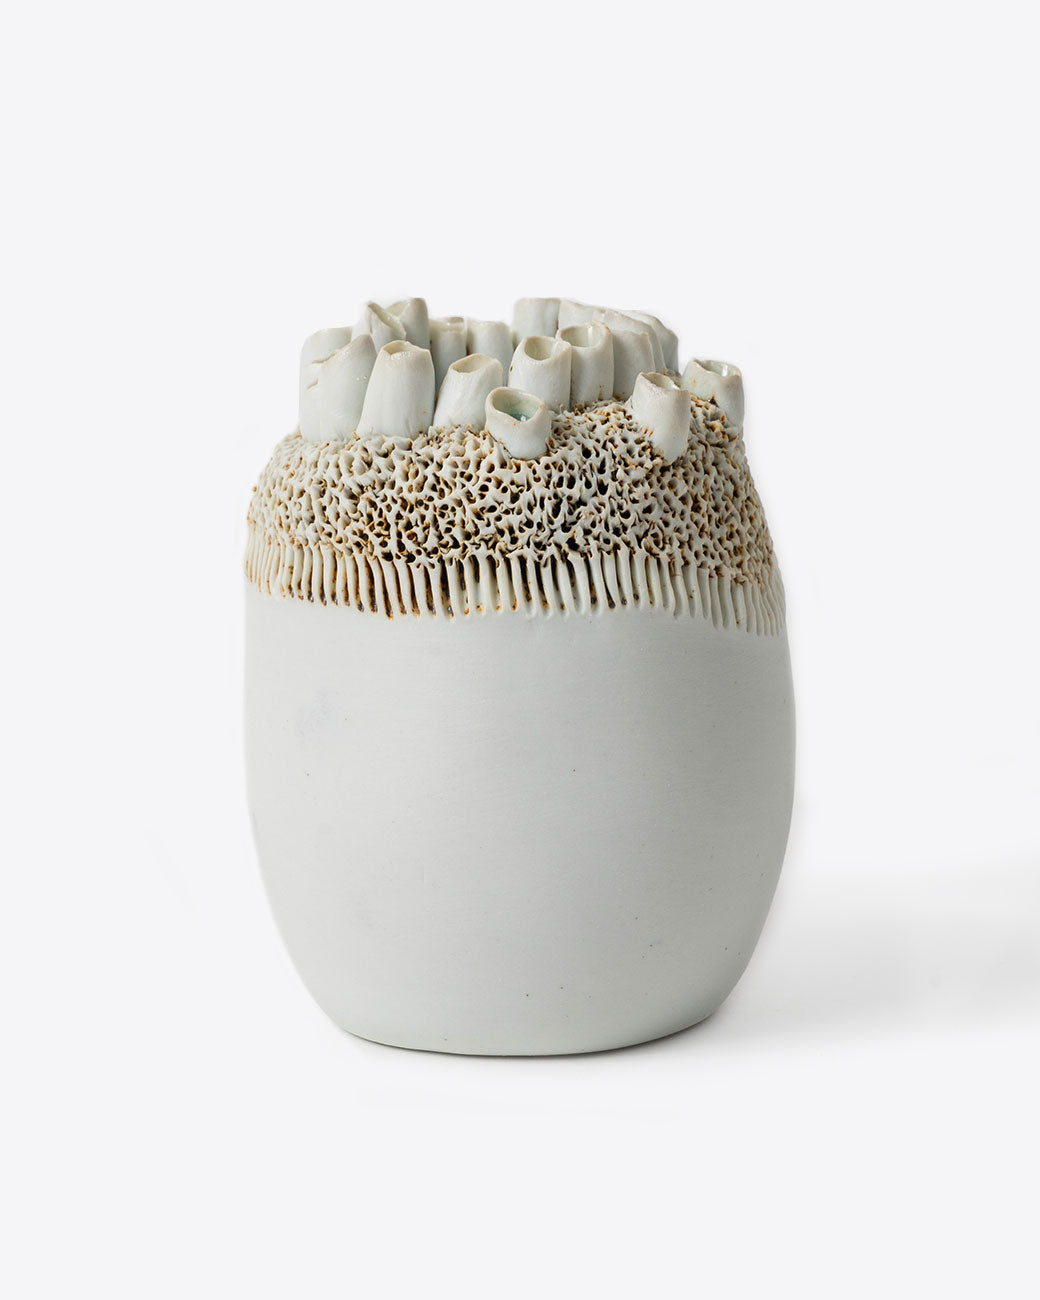 Handmade porcelain barnacle motif vase by Jo Boyer.